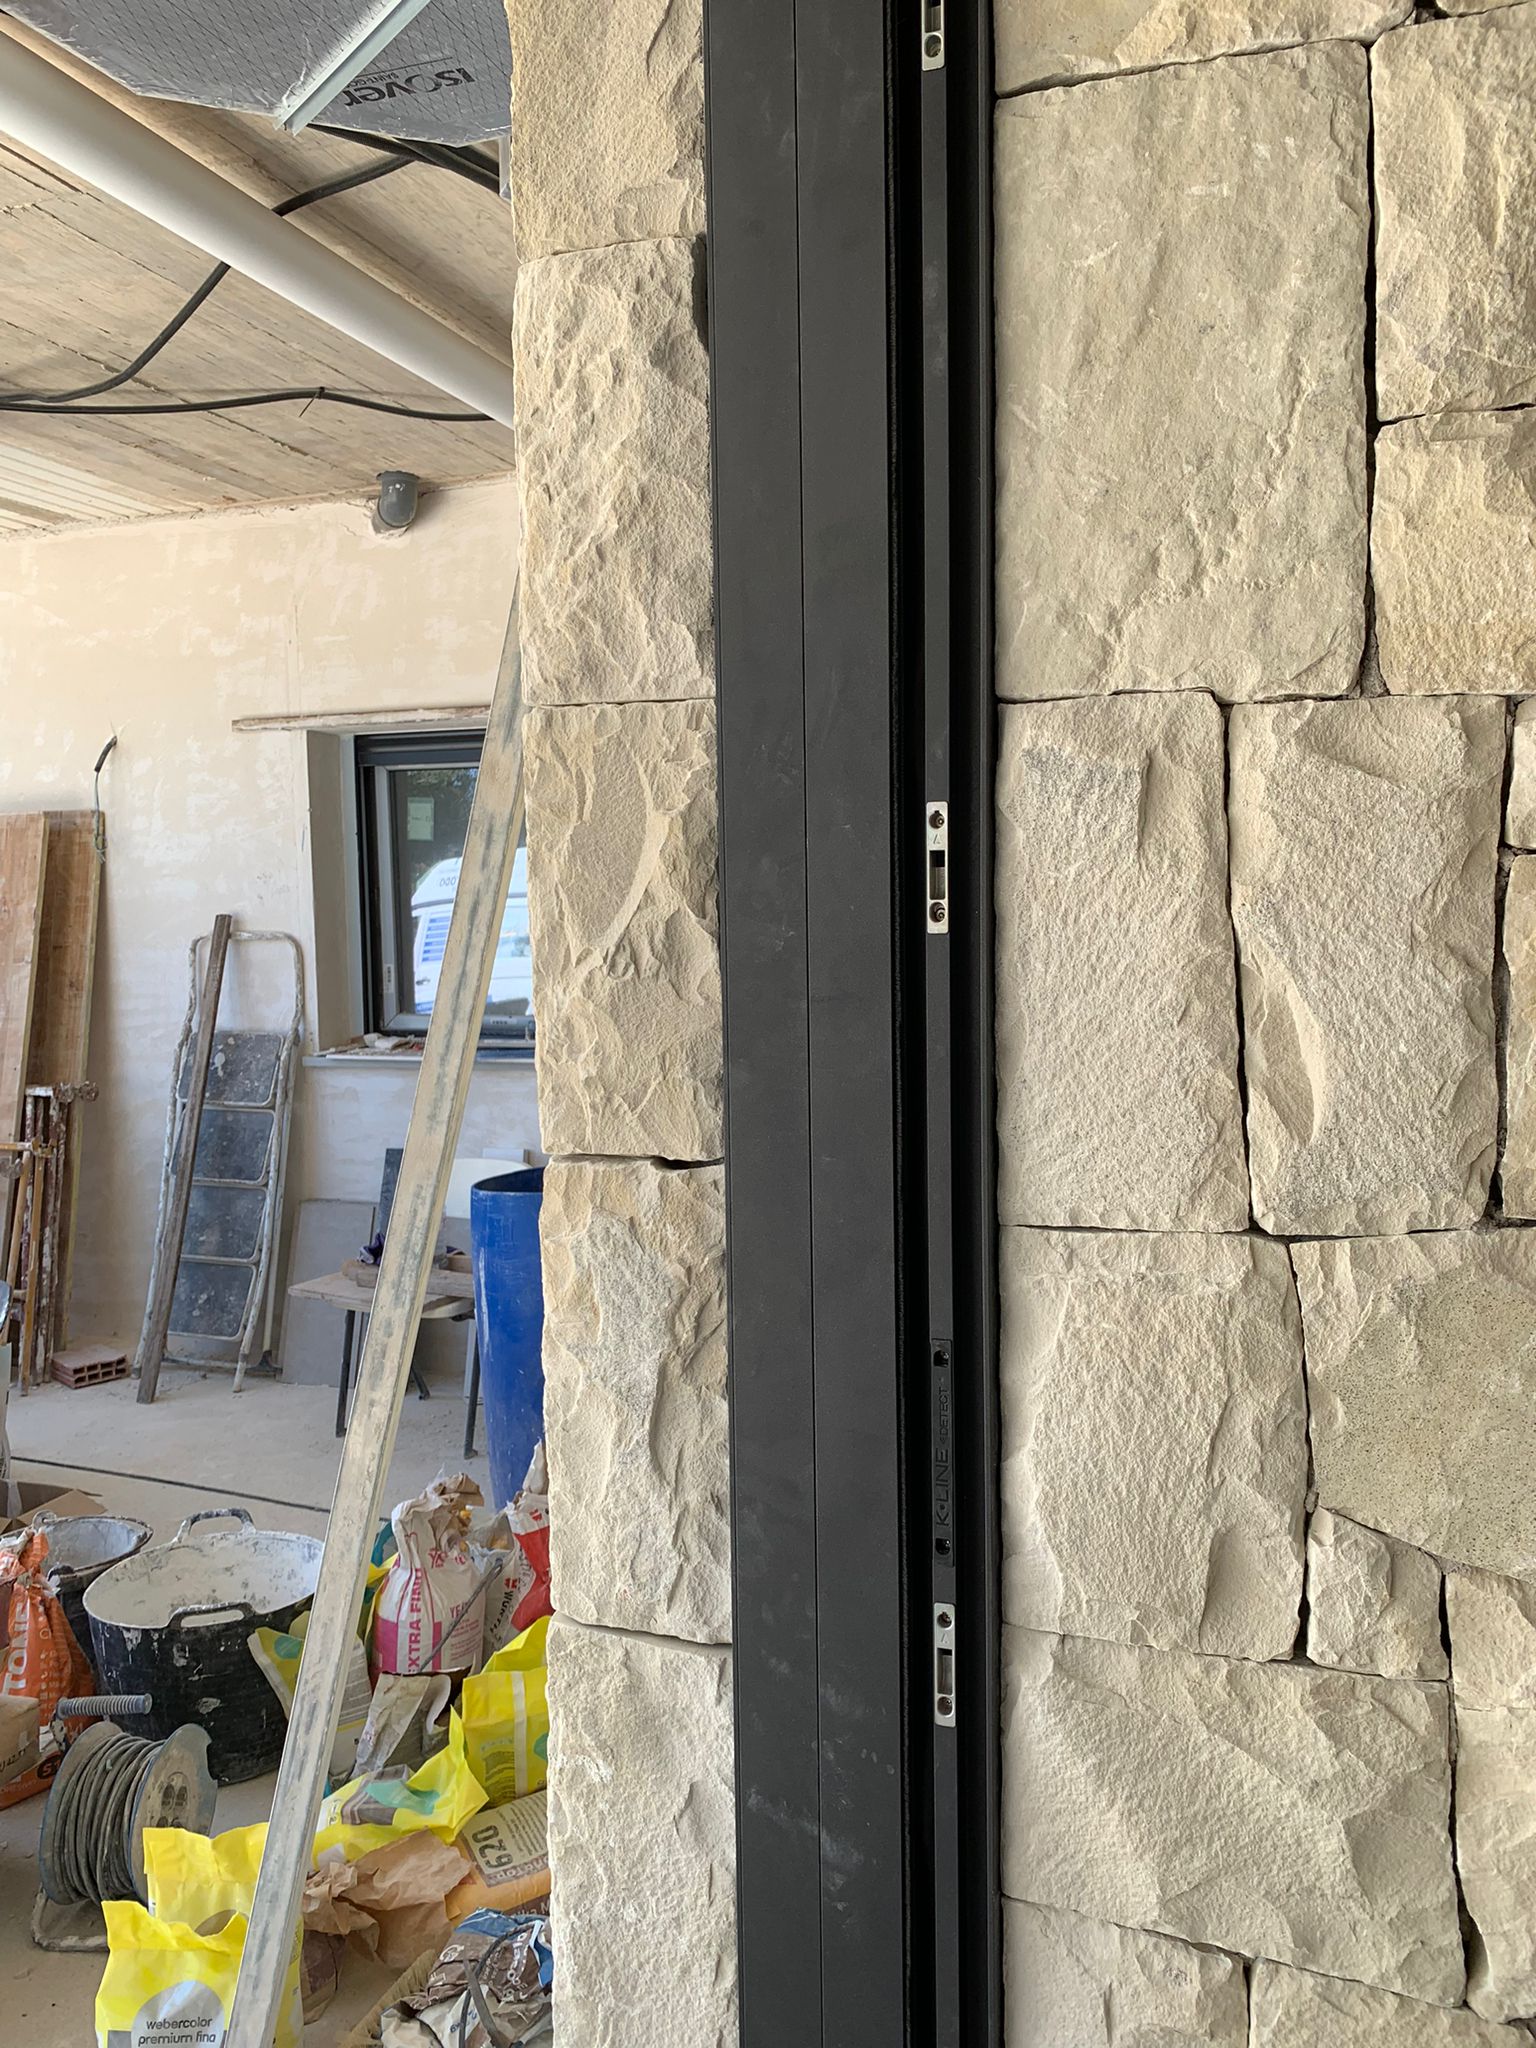 Marco de una ventana de aluminio totalmente empotrada en una hermosa pared de piedras. Los perfiles de aluminio de esta ventana están completamente integrados dentro de la pared. Un excelente trabajo de instalación de ventanas en Alicante